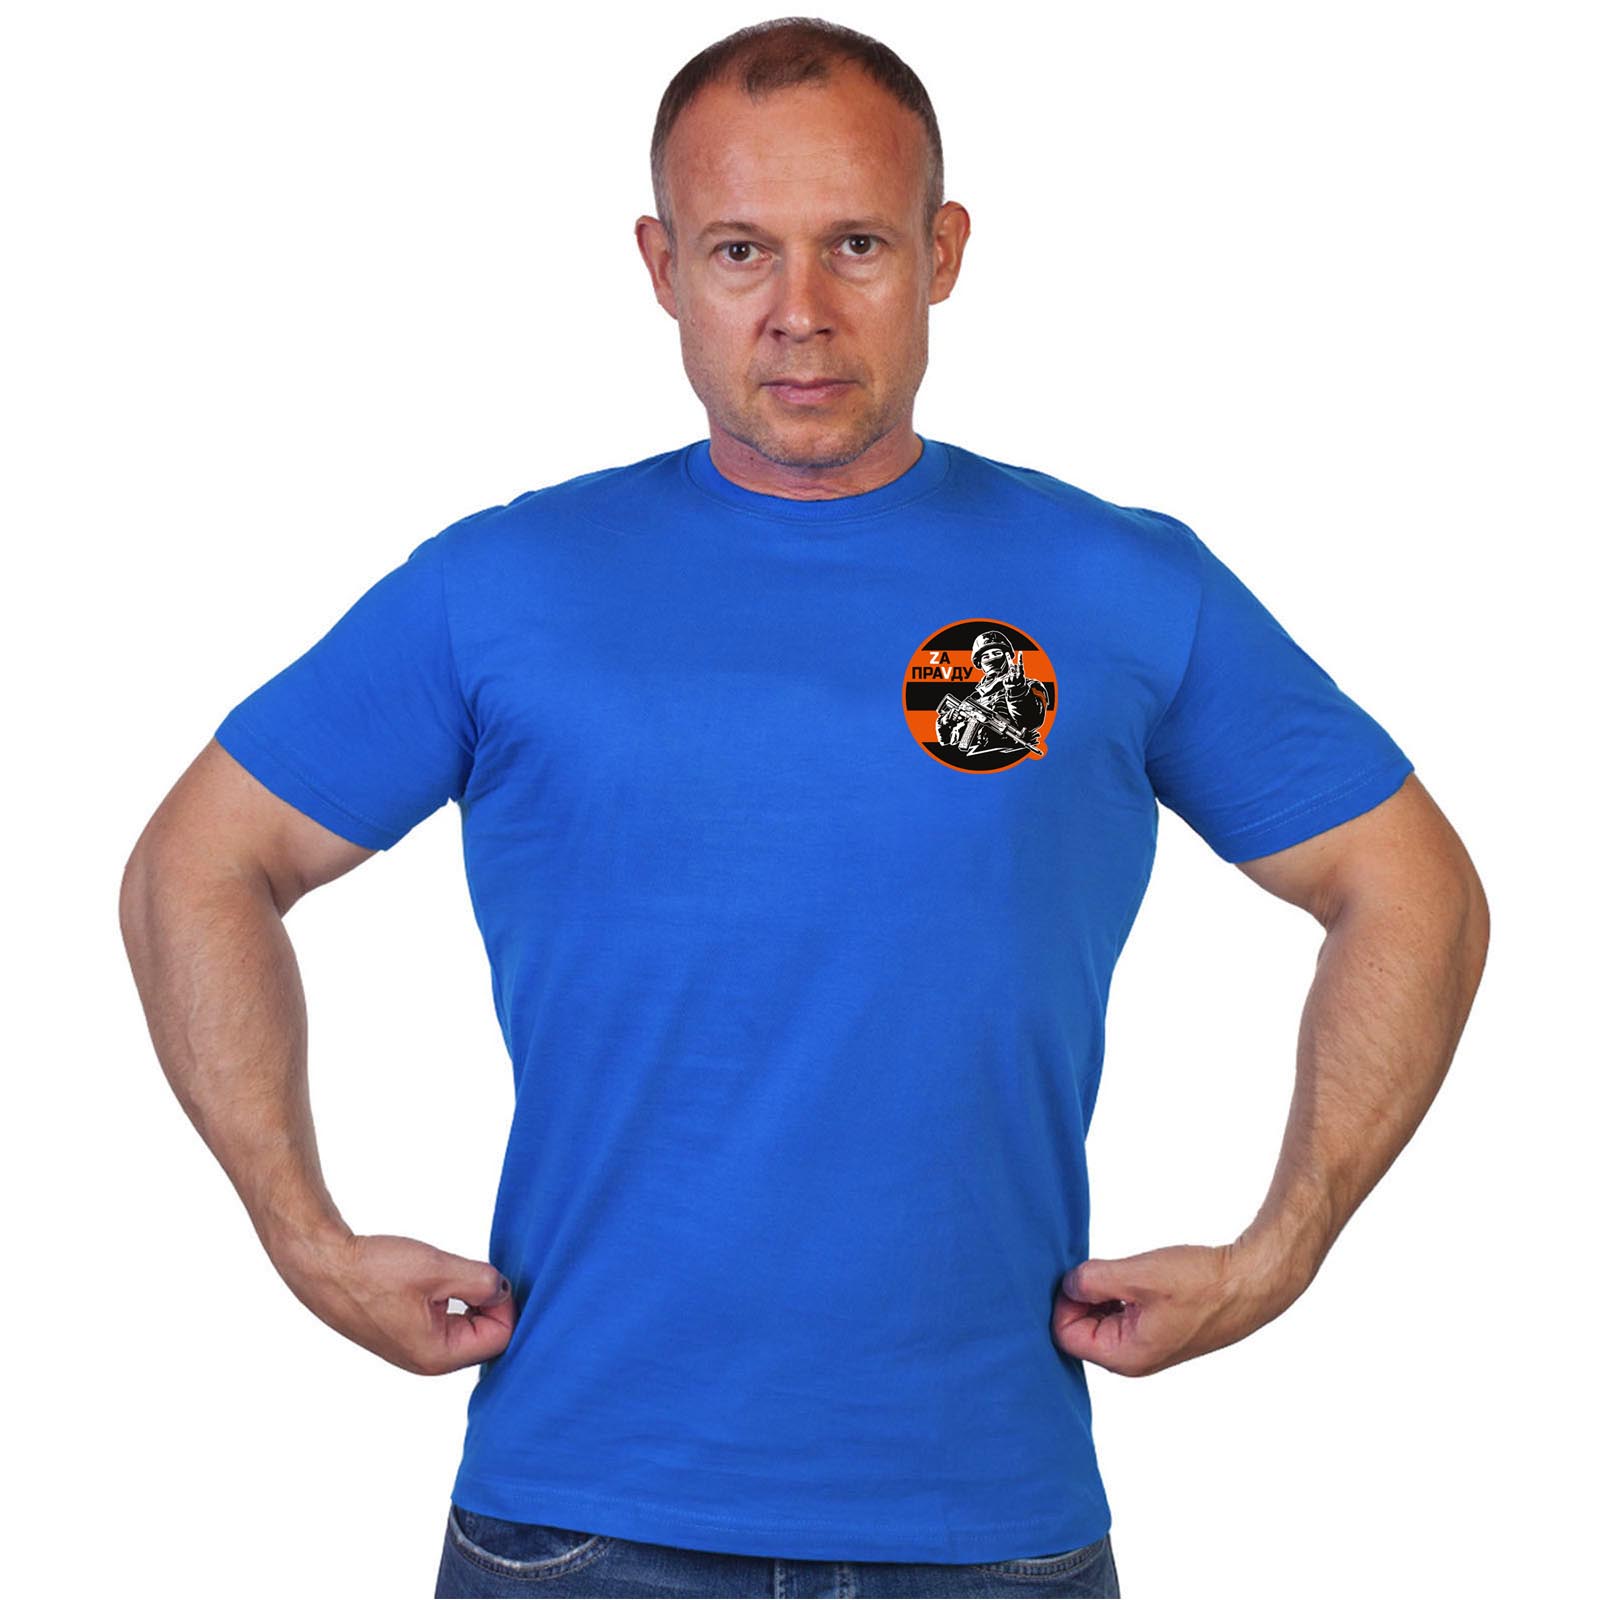 Васильковая футболка с термоаппликацией "Zа праVду"